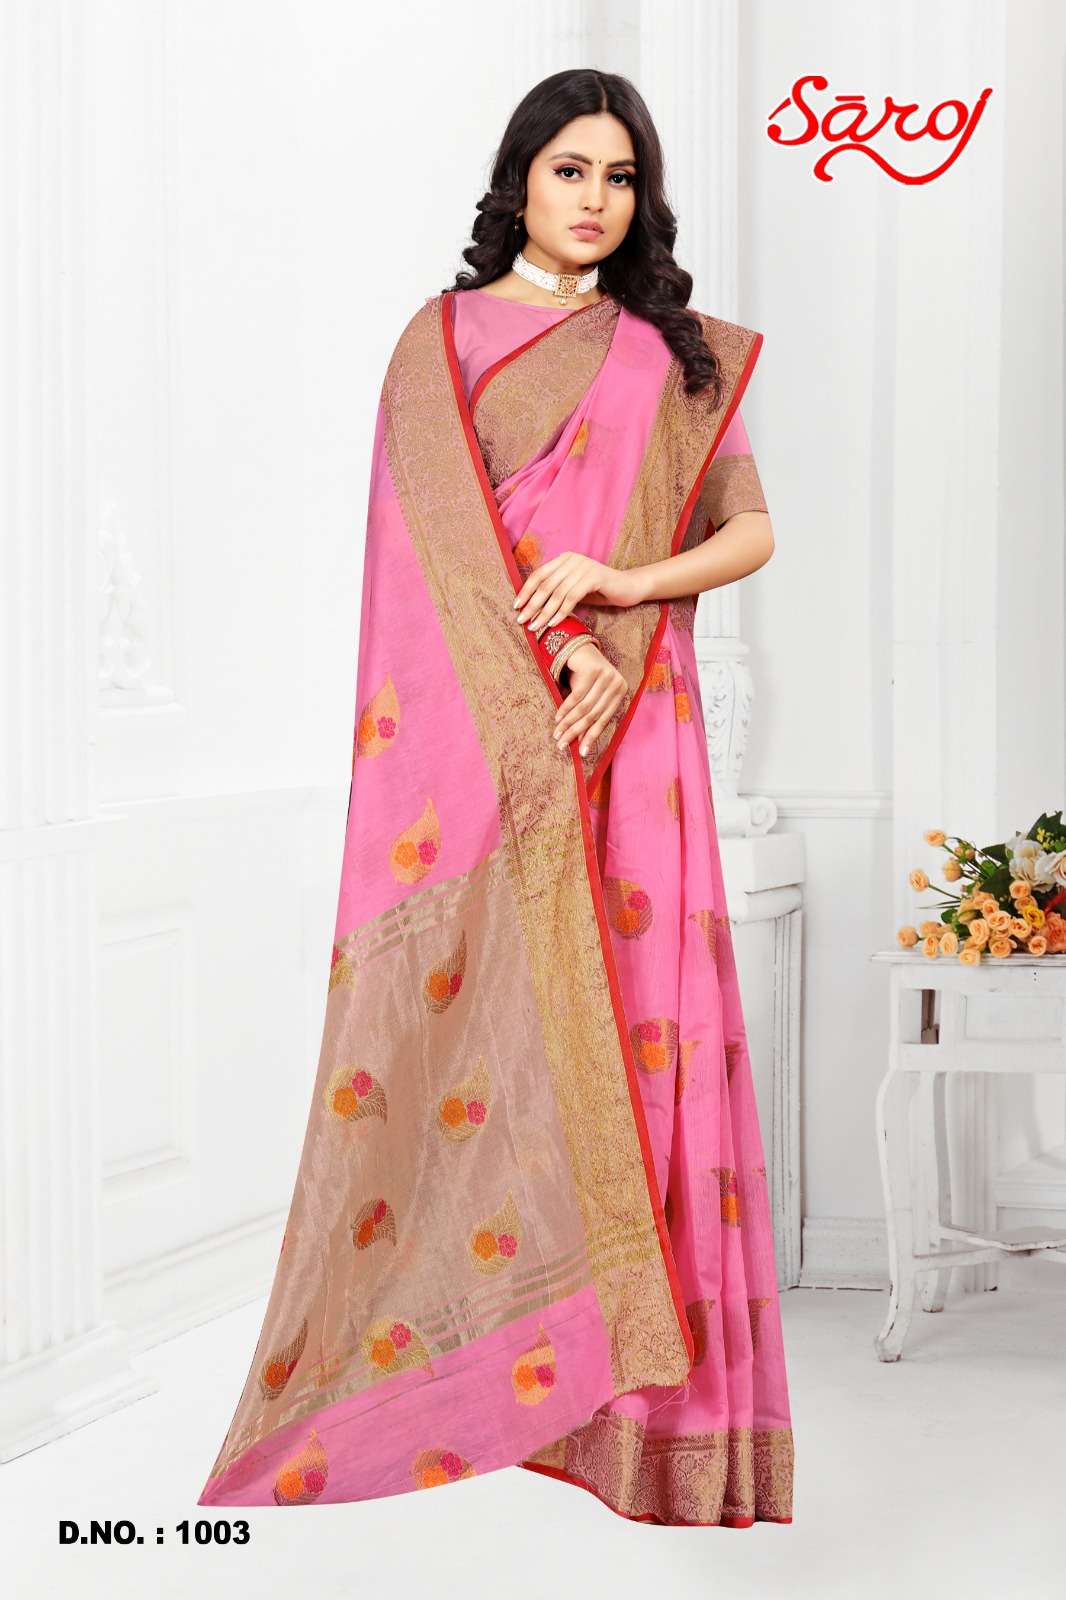 Saroj textile presents Shandaar vol-2 Cotton Designer sarees catalogue